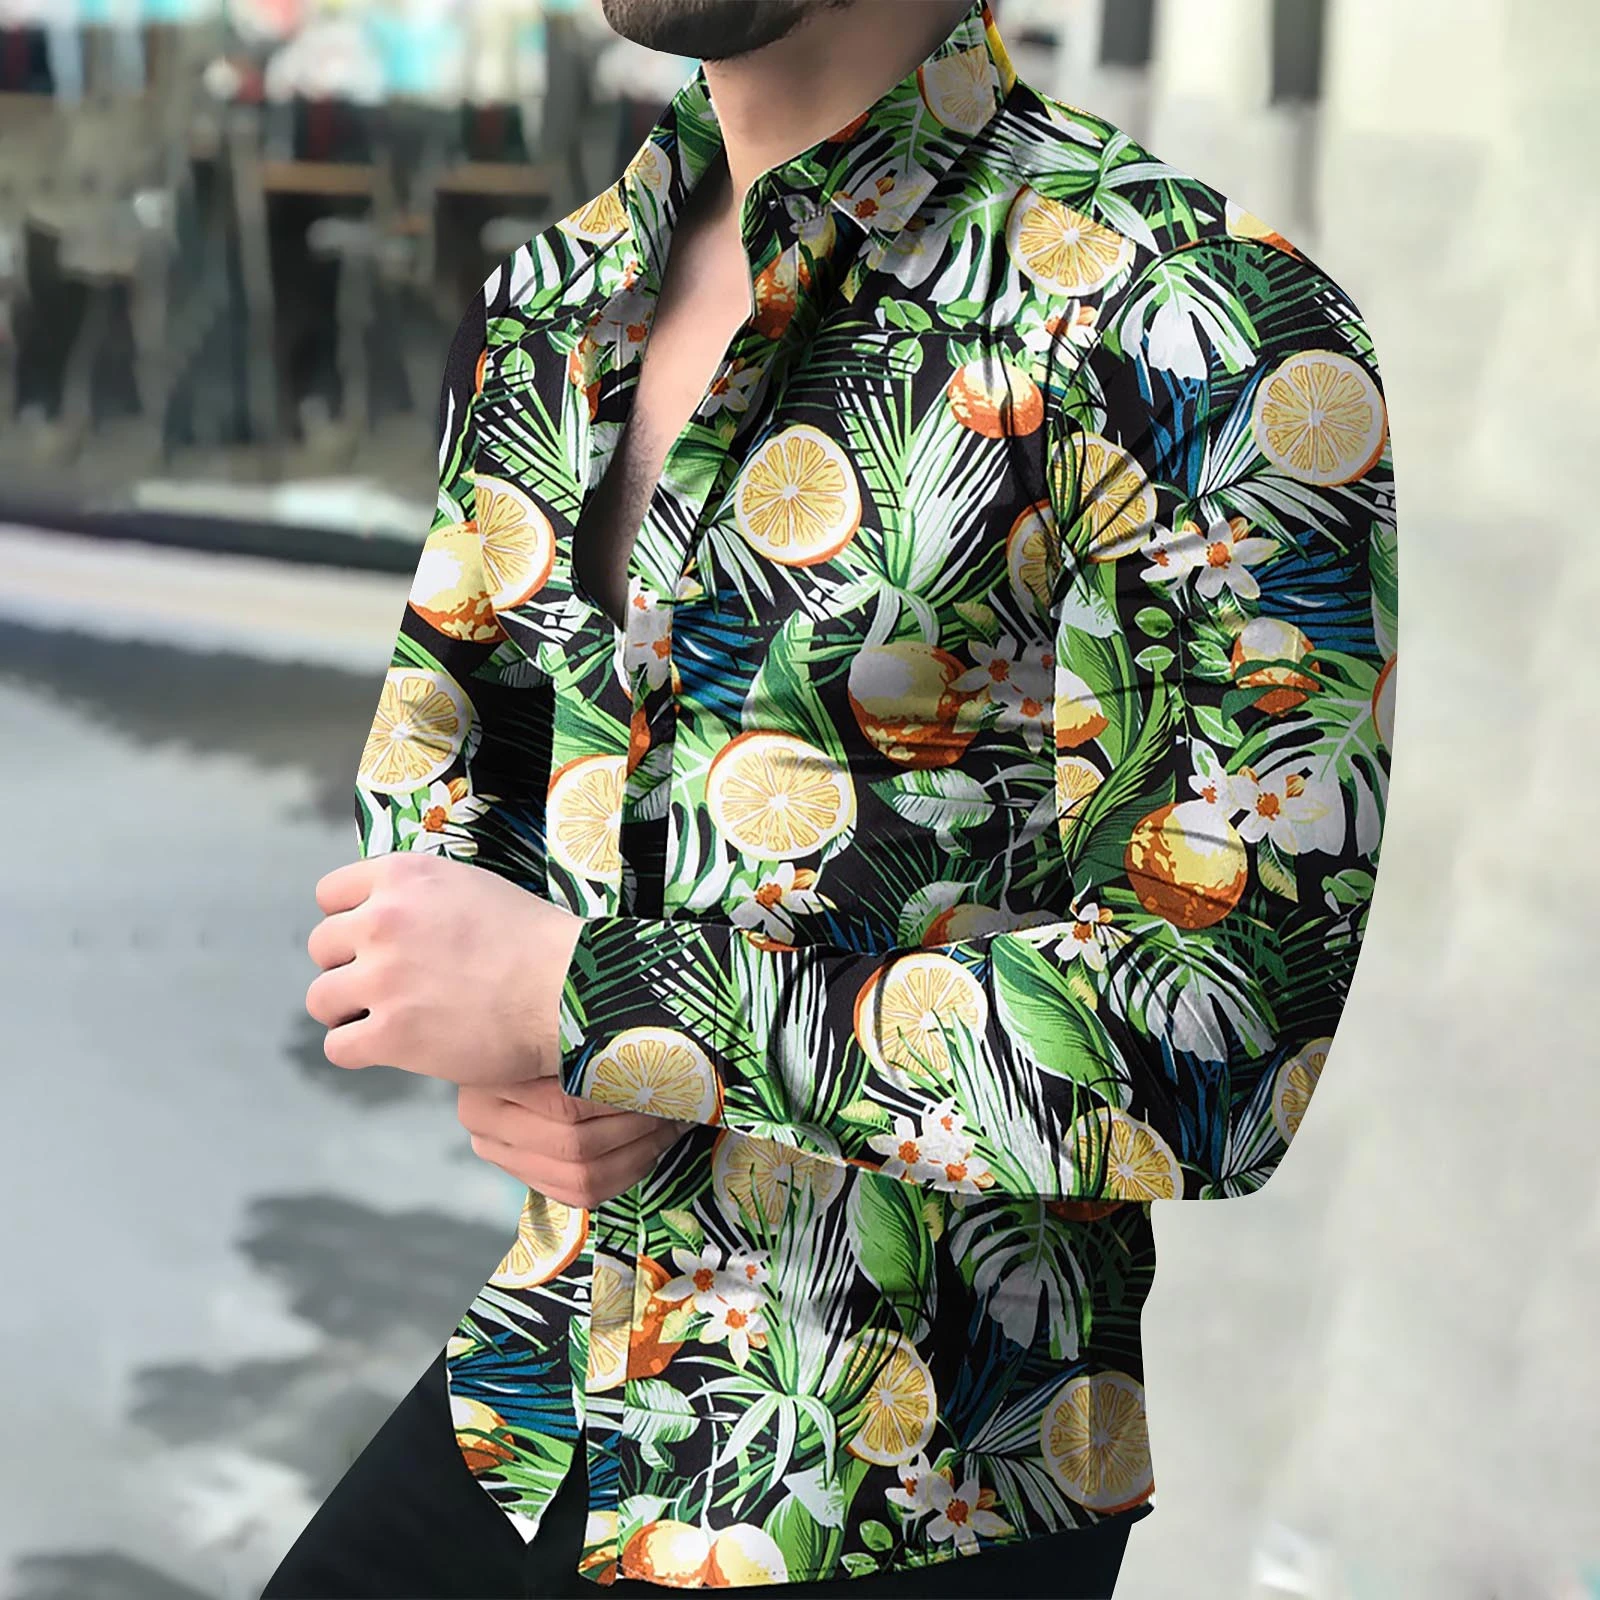 Camisa hawaiana manga larga hombre, cárdigan de lujo con botones, al por mayor, 2021|Camisas informales| - AliExpress